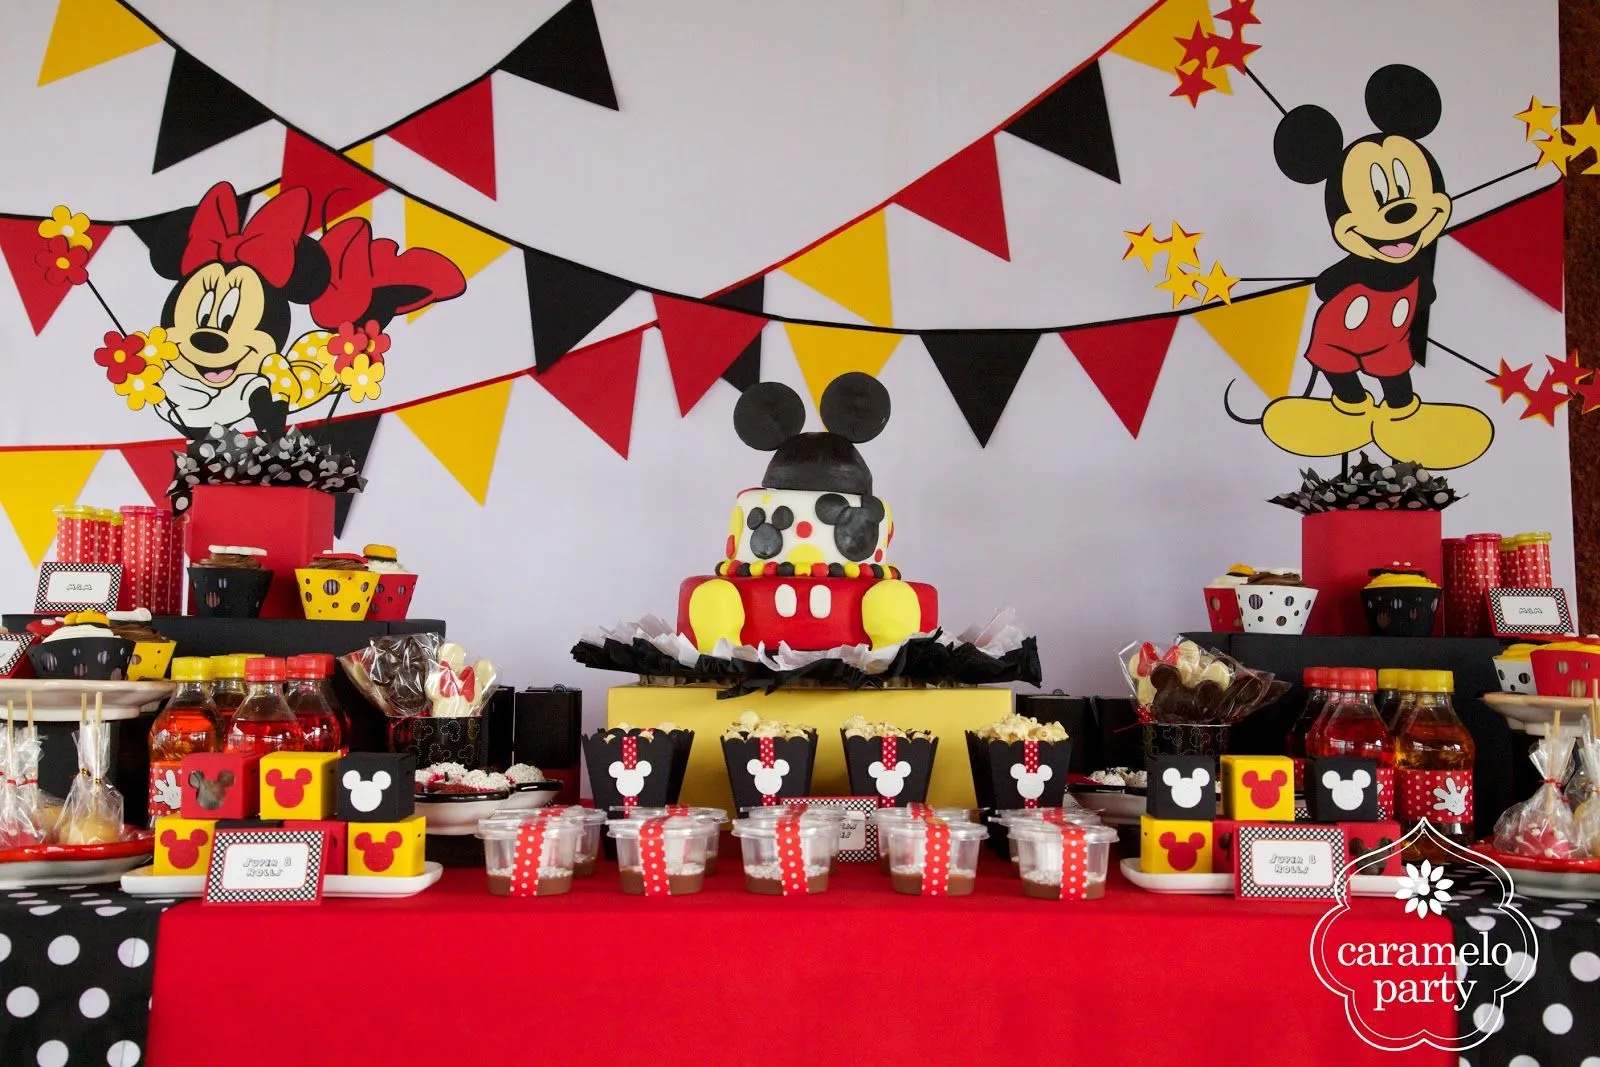 Caramelo Party: Fiesta de Mickey y Minnie Mouse